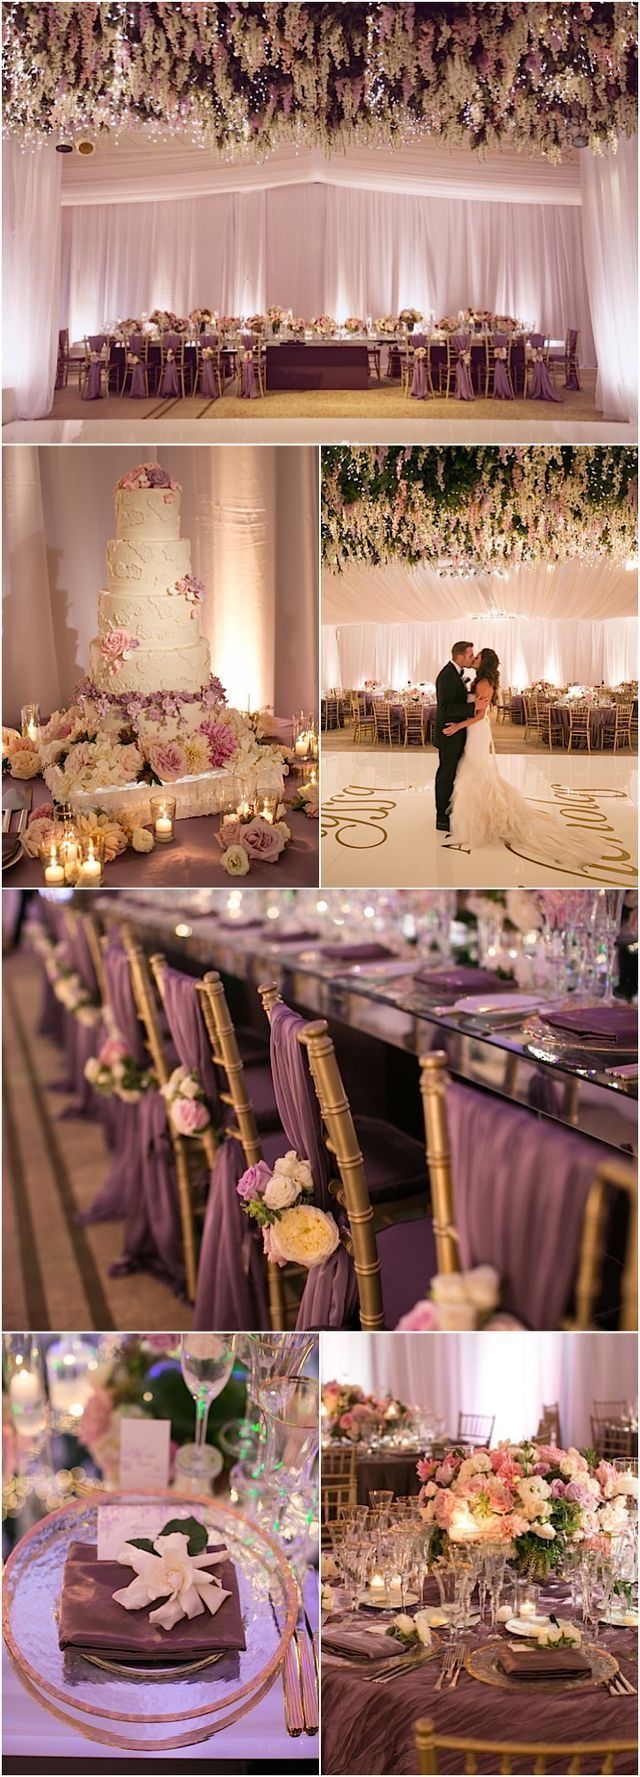 Top 10 Wedding Color Ideas for 2018 Trends -   12 wedding DIY purple ideas